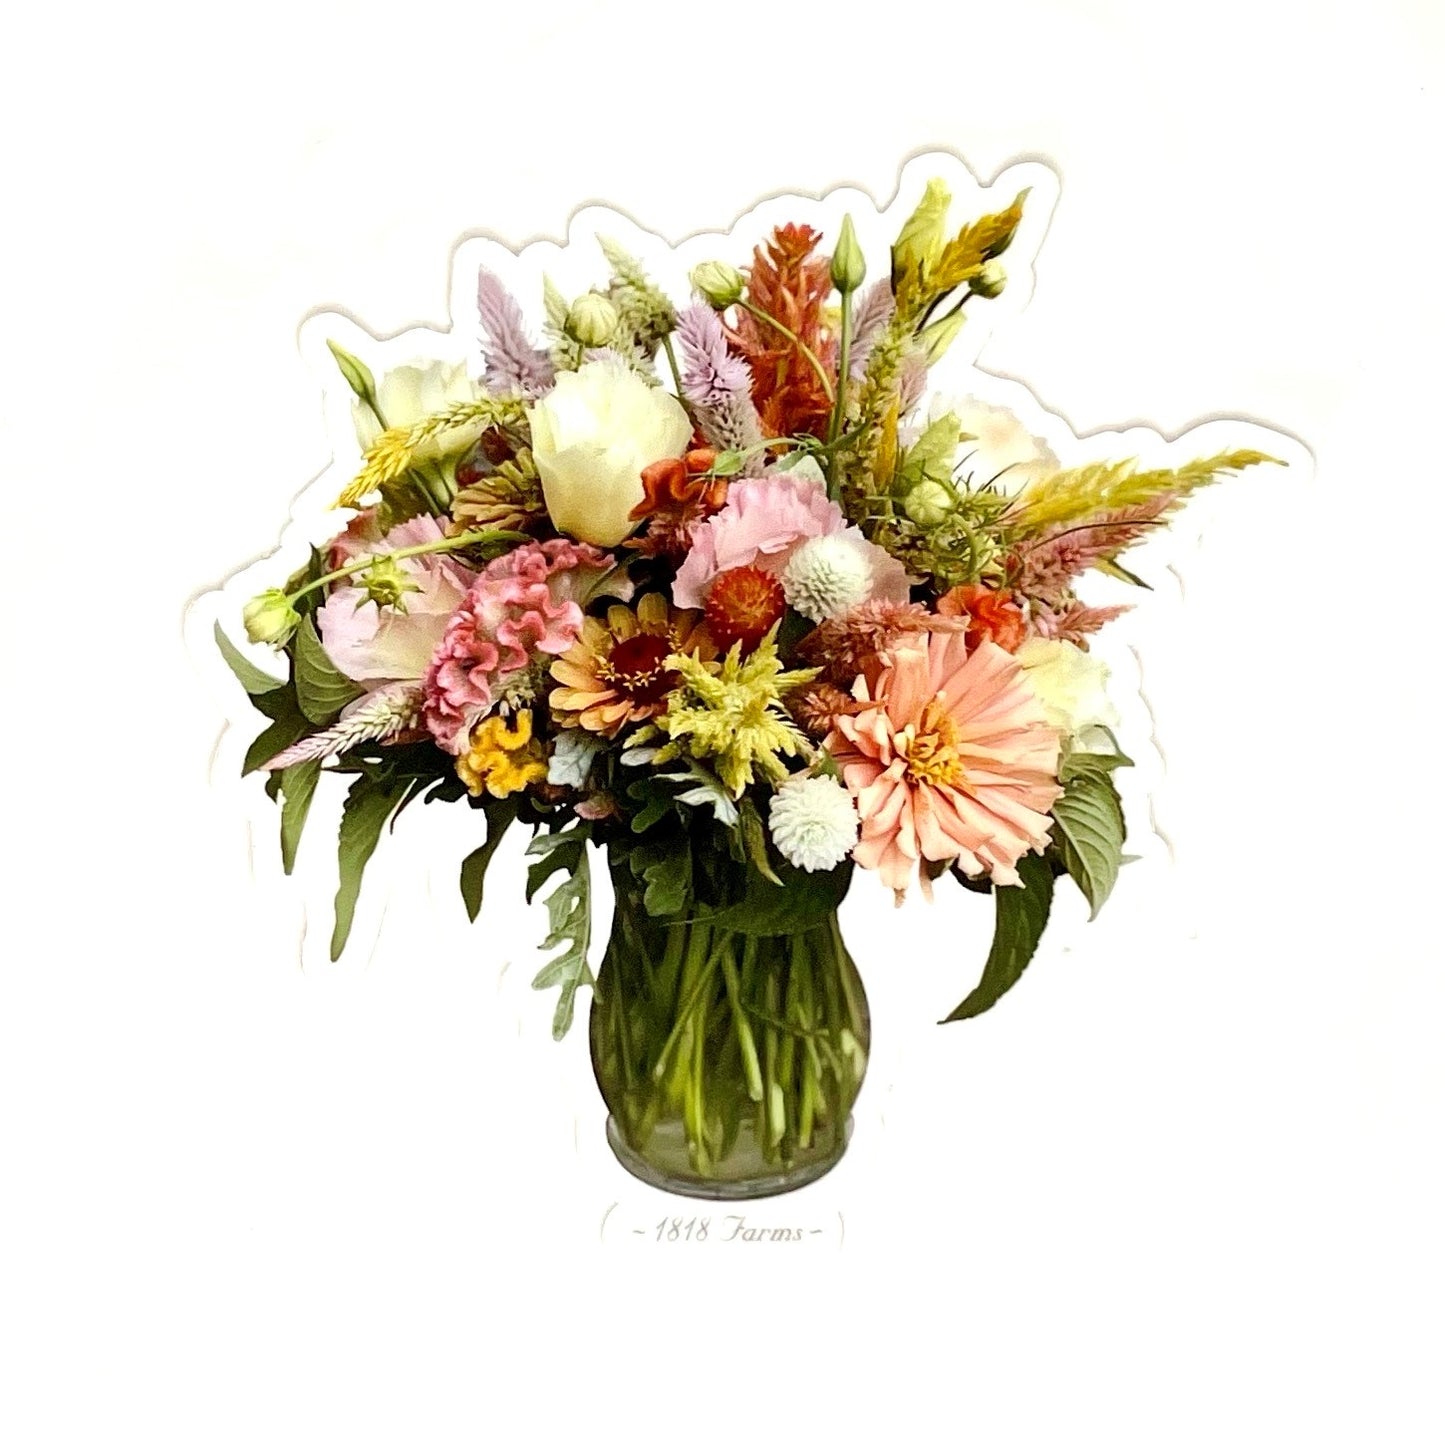 Flower Lover's Gift Box Gift Basket 1818 Farms   